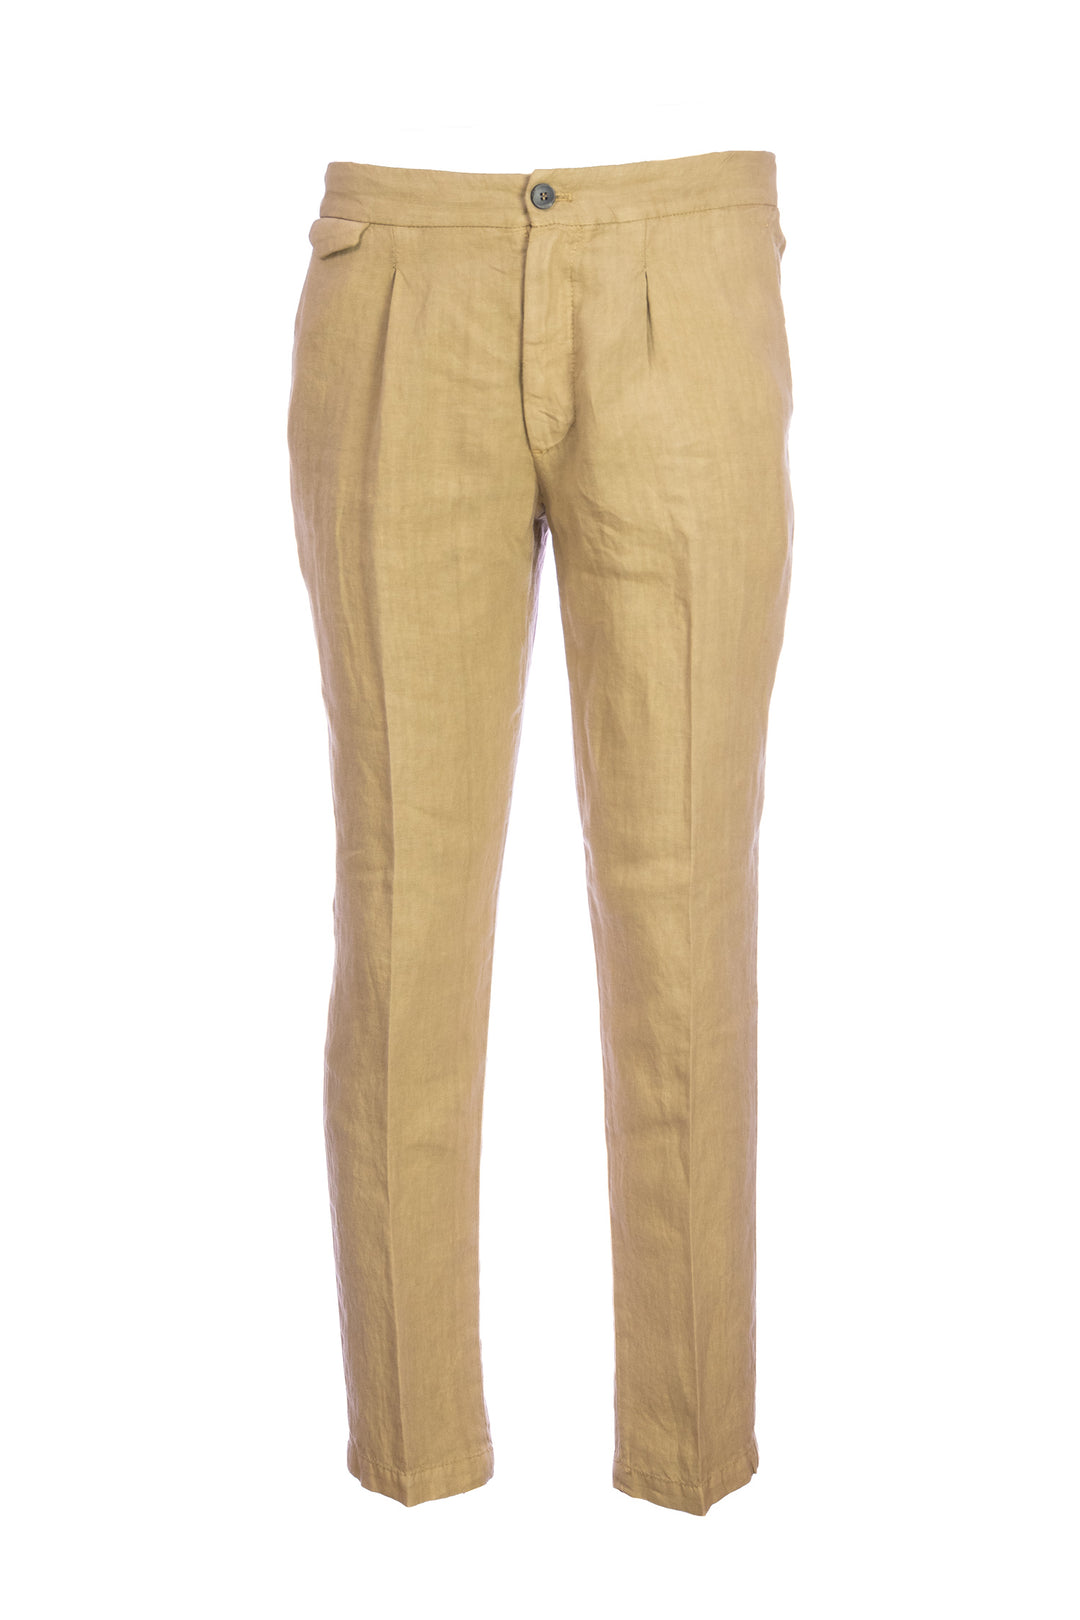 DEVORE Pantalone leggero cammello in lino con una pence - Mancinelli 1954